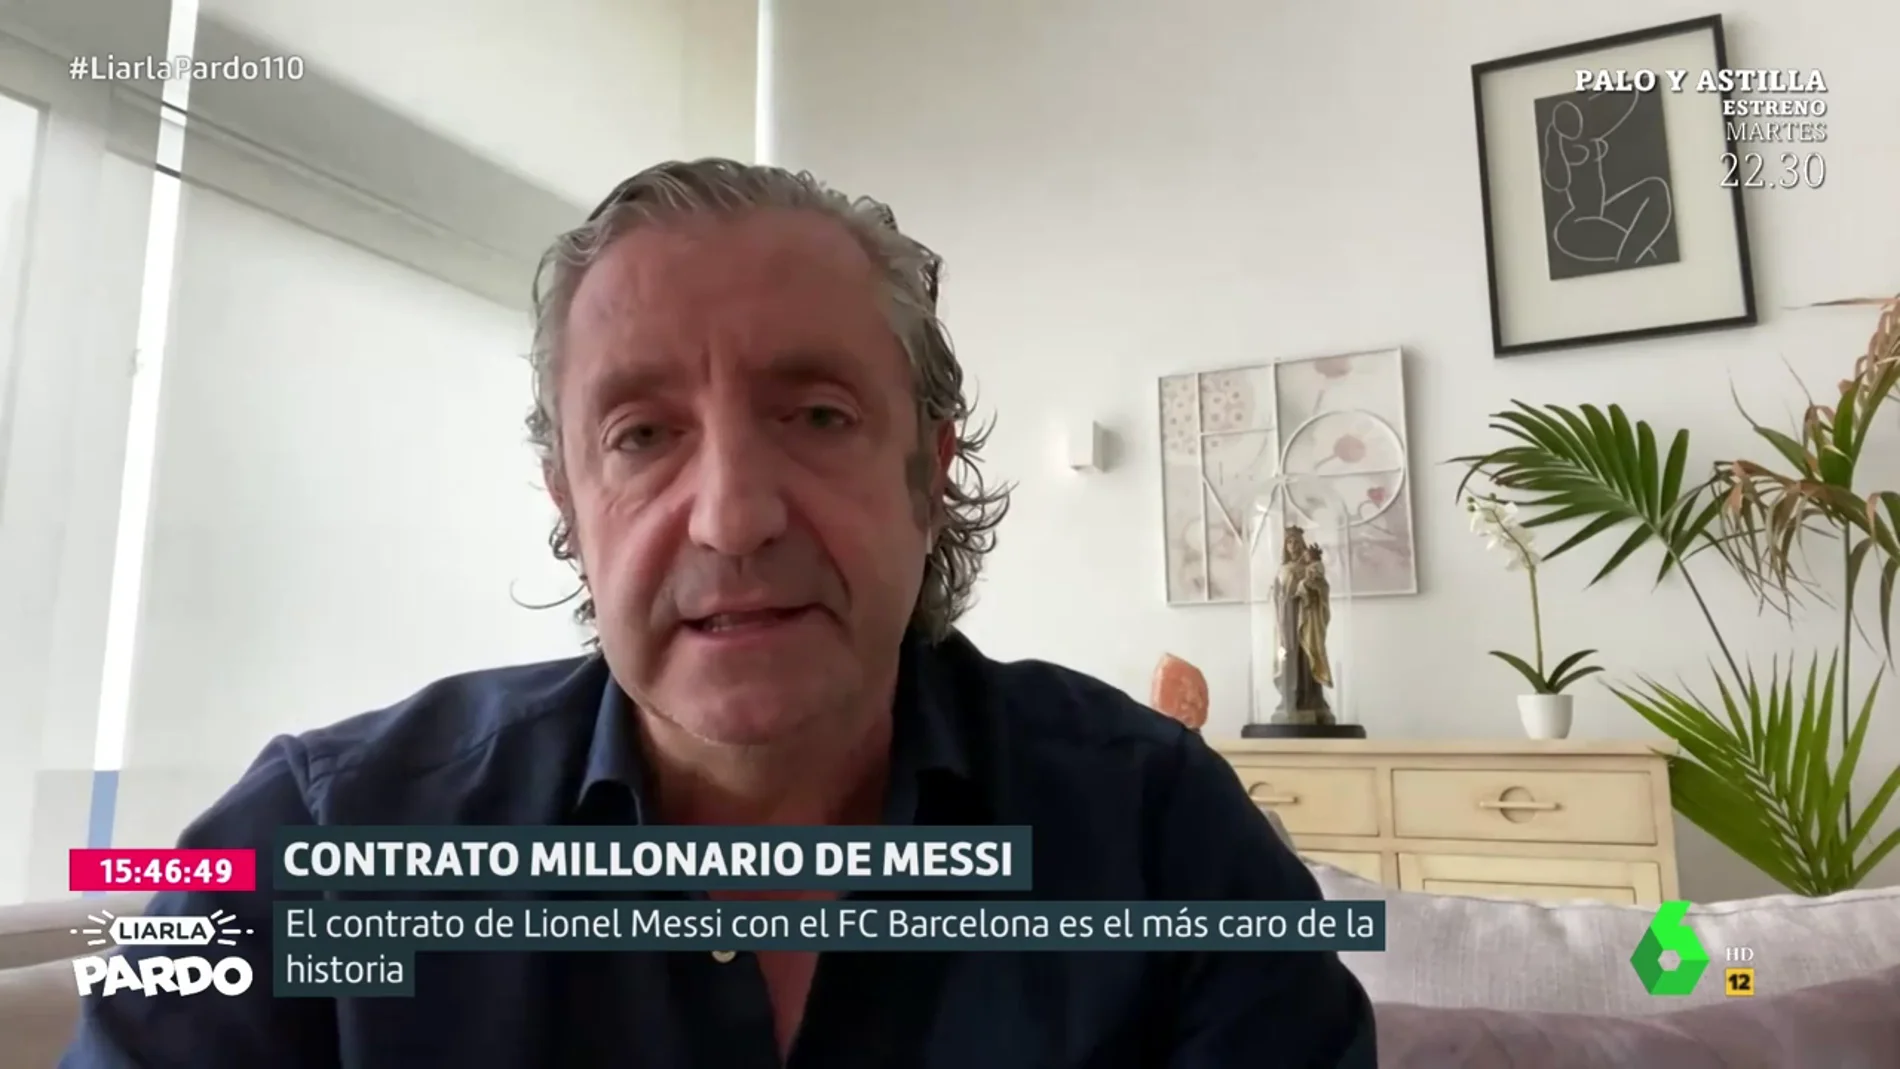 Josep Pedrerol, tras saberse el sueldo de Messi: "El séptimo mejor pagado en el Barça gana más que el primero del Real Madrid"